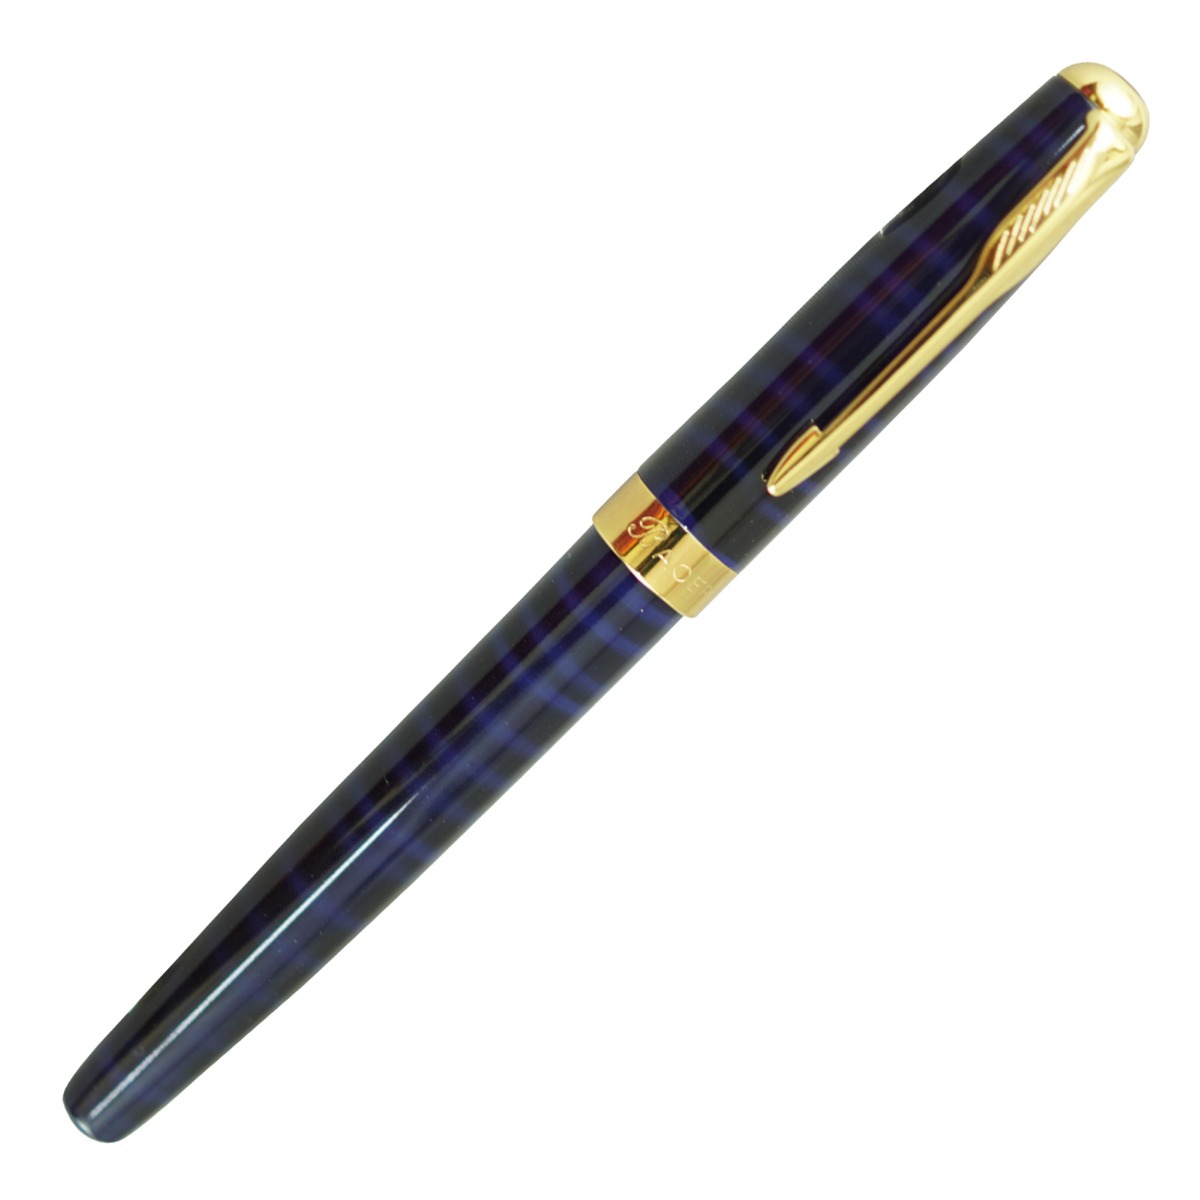 Baoer 388 Model No: 17053 Blue Color Design Body With Gold Clip Roller Ball Pen